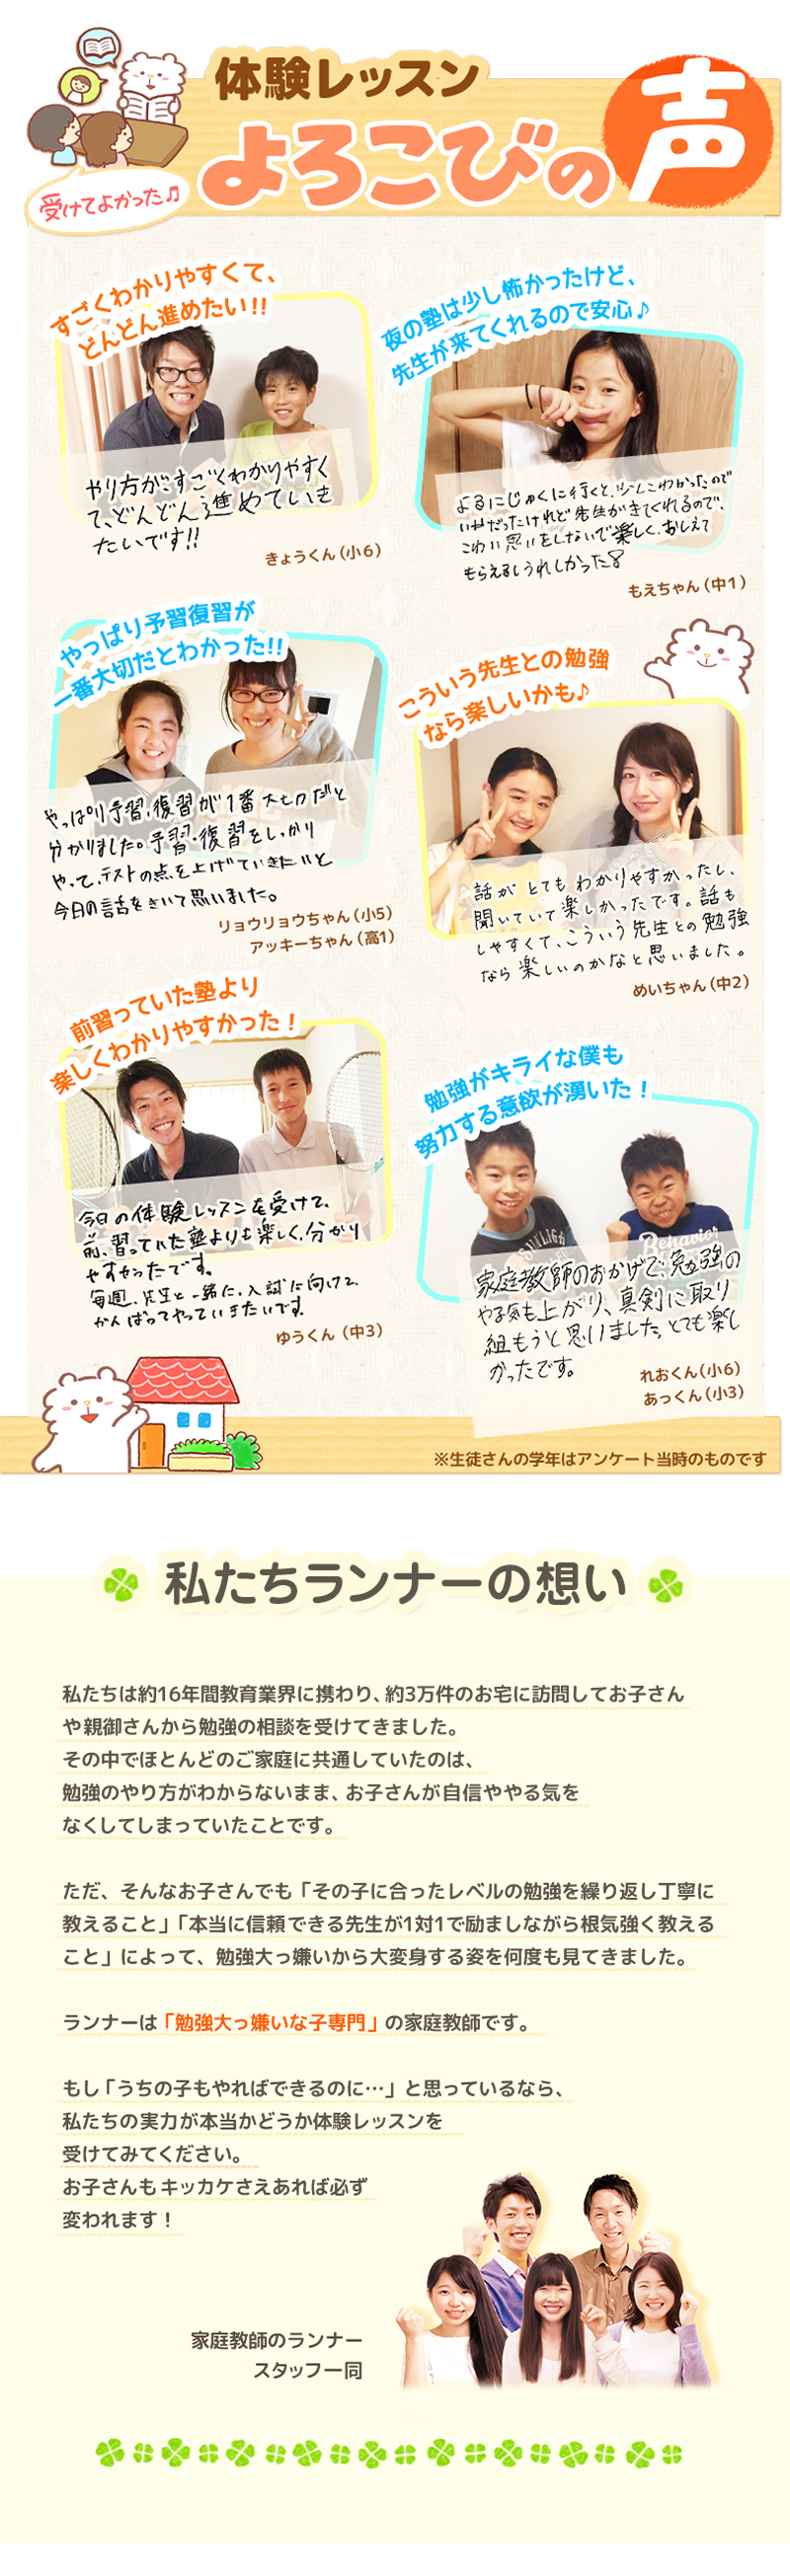 【家庭教師-東京都-檜原村のお客様のページ】【画像が表示されない場合はページ下部に画像と同じ内容をテキストで掲載していますのでそちらをご覧ください。】